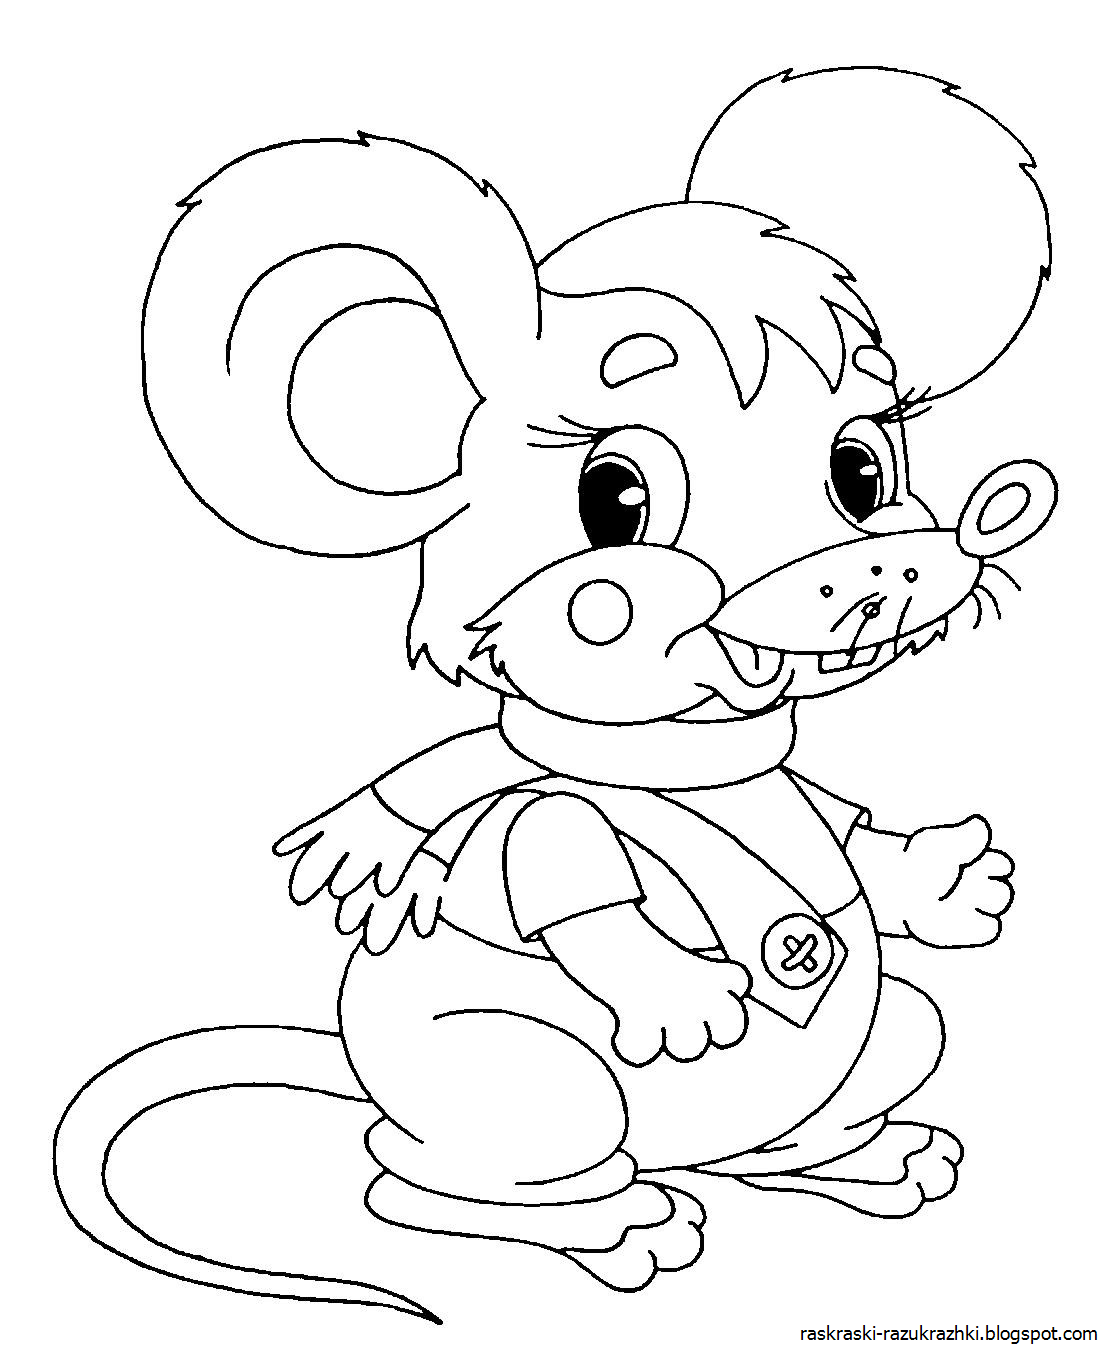 Картинки раскраски мышат. Раскраска мышка. Раскраска пышка. Раскраска мышонок. Мышка раскраска для детей.